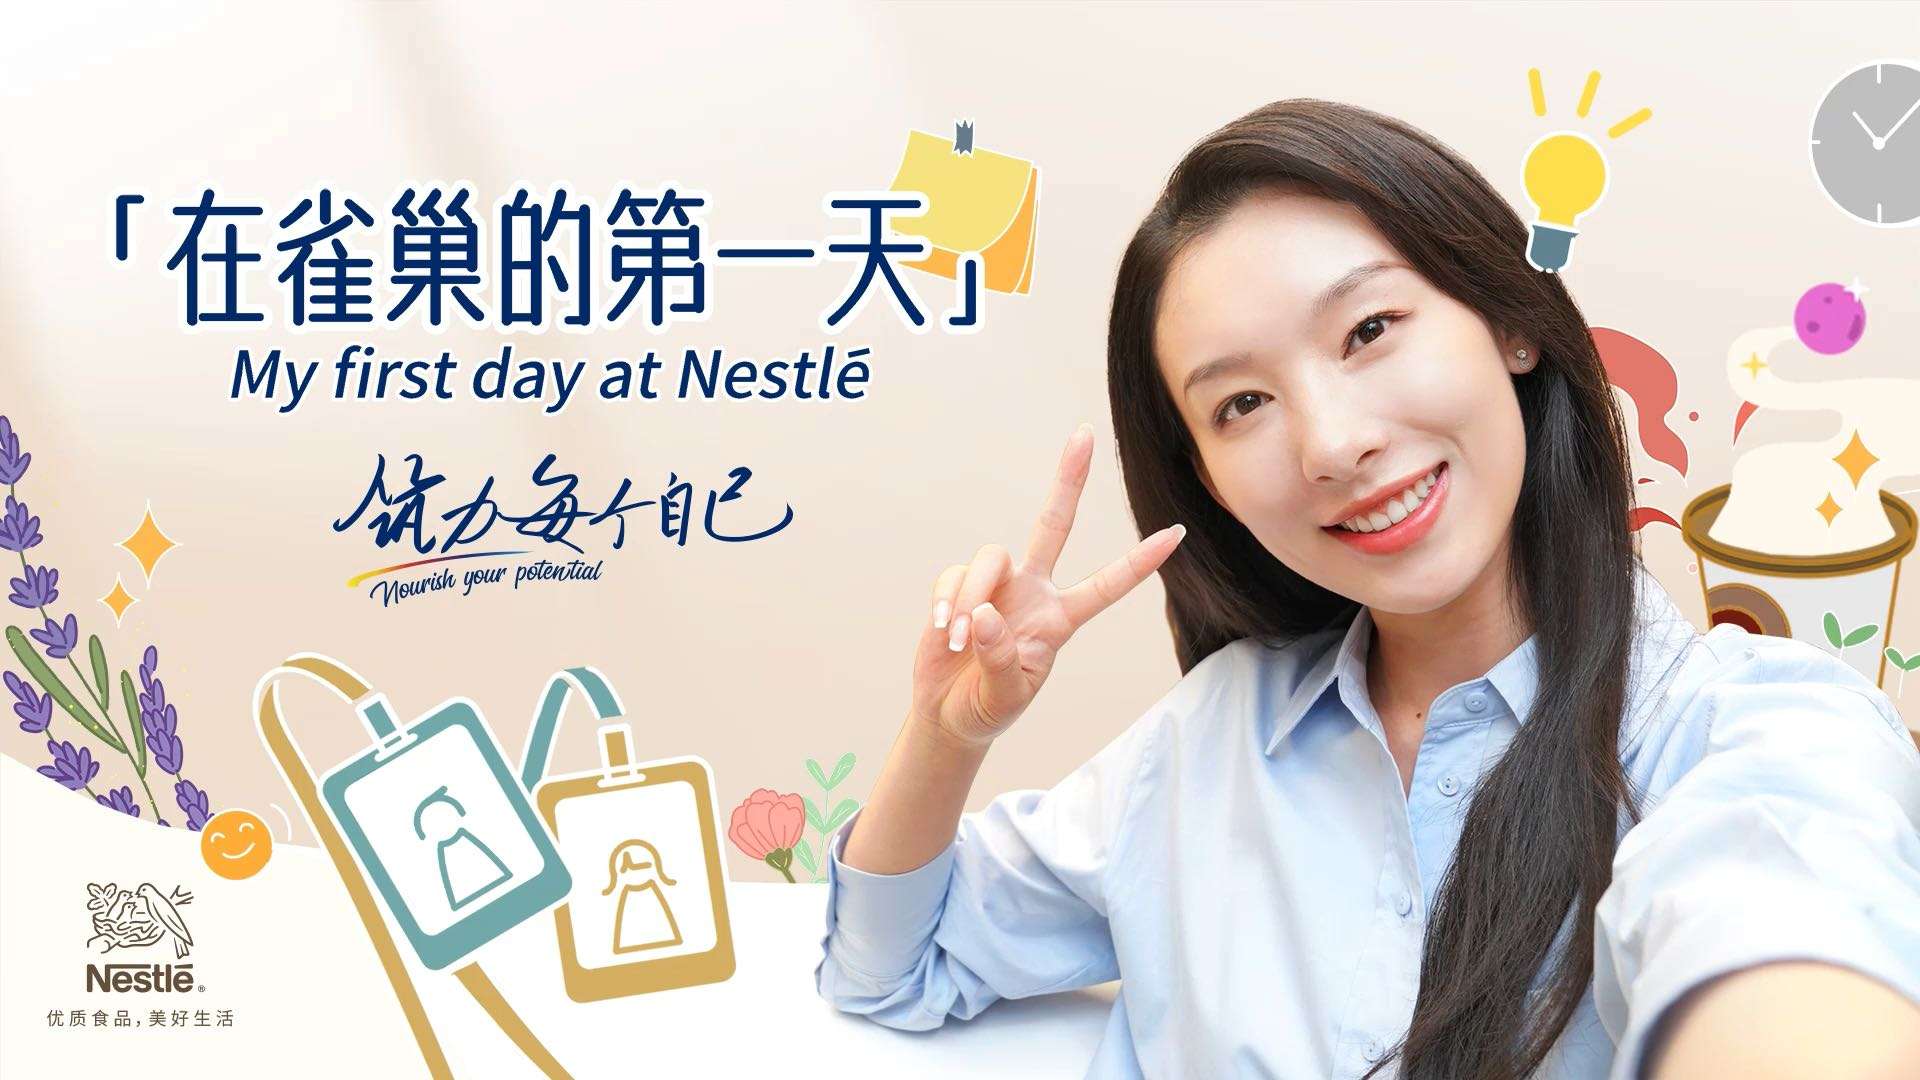 「在雀巢的第一天」 Nestle雀巢中国EVP 雇主价值主张 招聘企宣